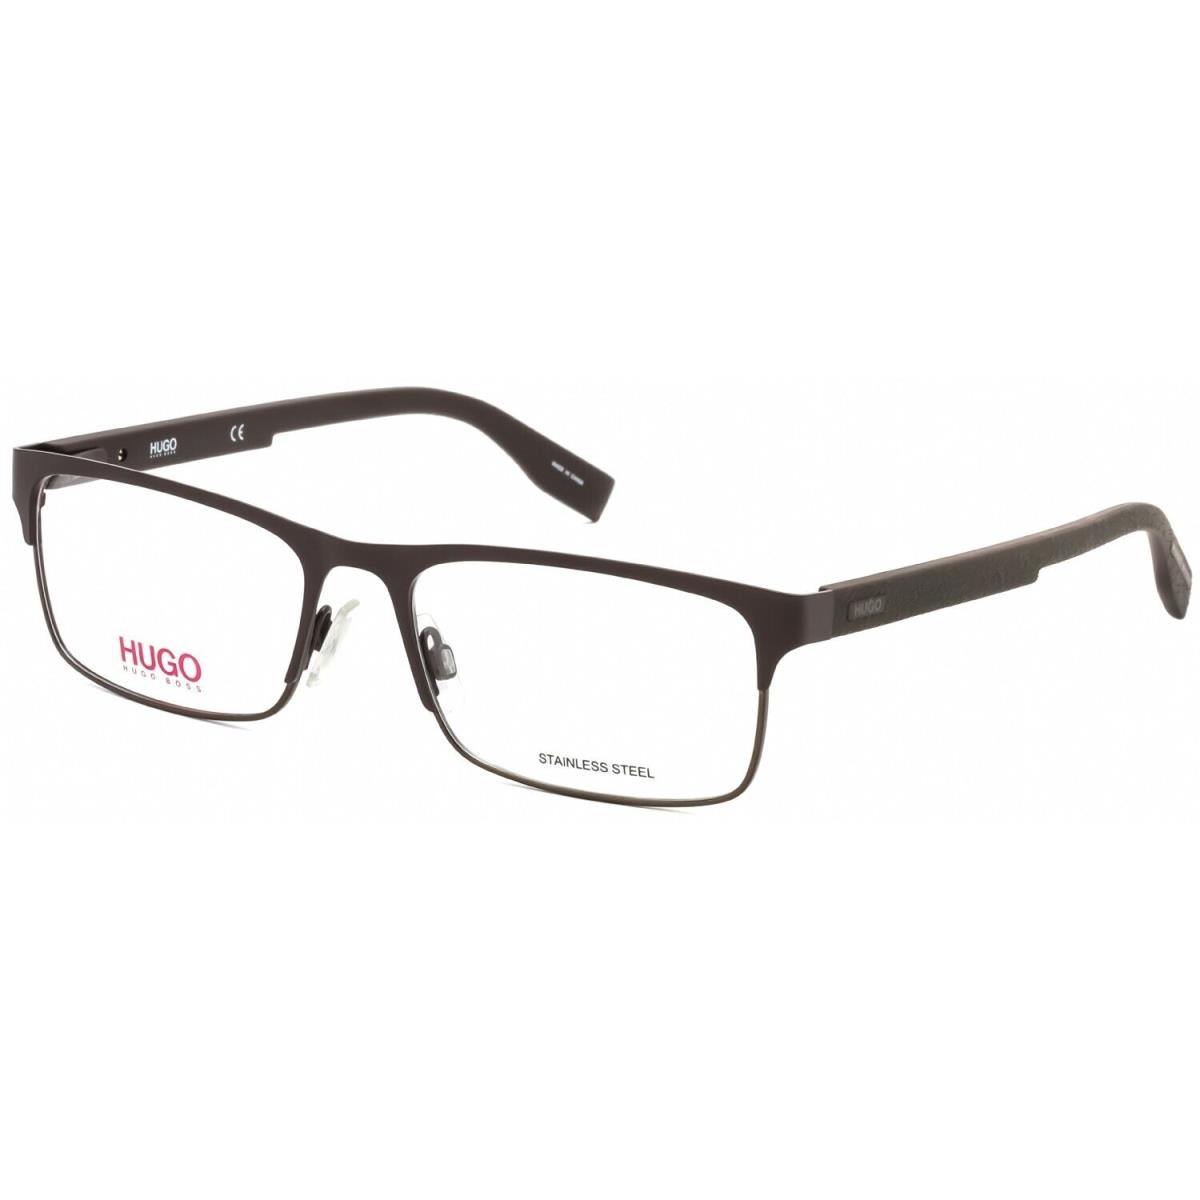 Hugo Boss HG0293 4IN Rectangle Matte Brown Eyeglasses